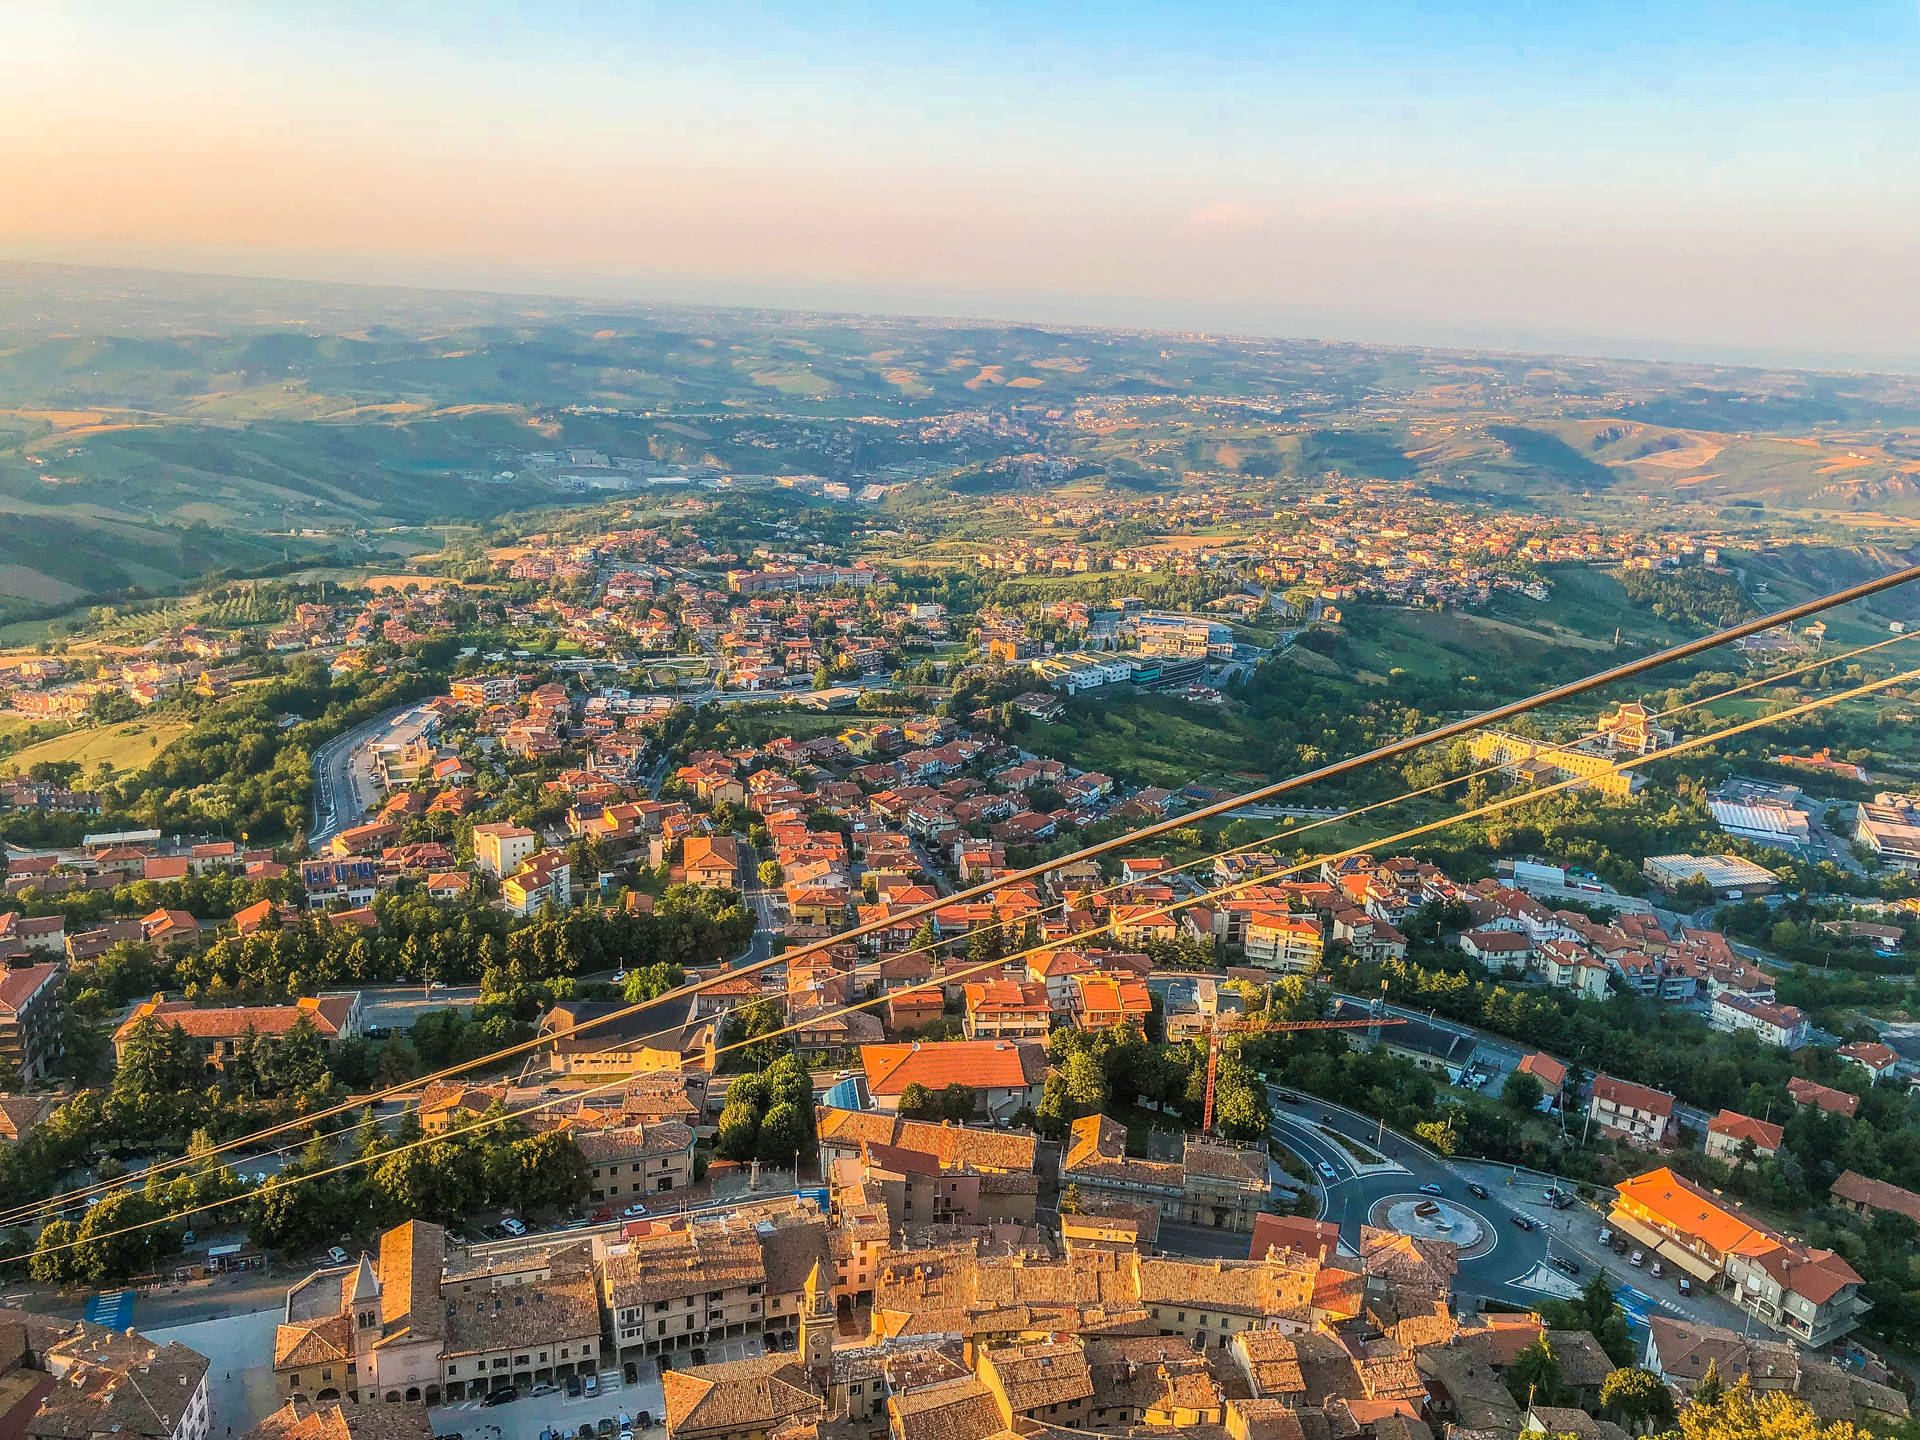 Vistaaérea De San Marino Forlì Cesena Fondo de pantalla